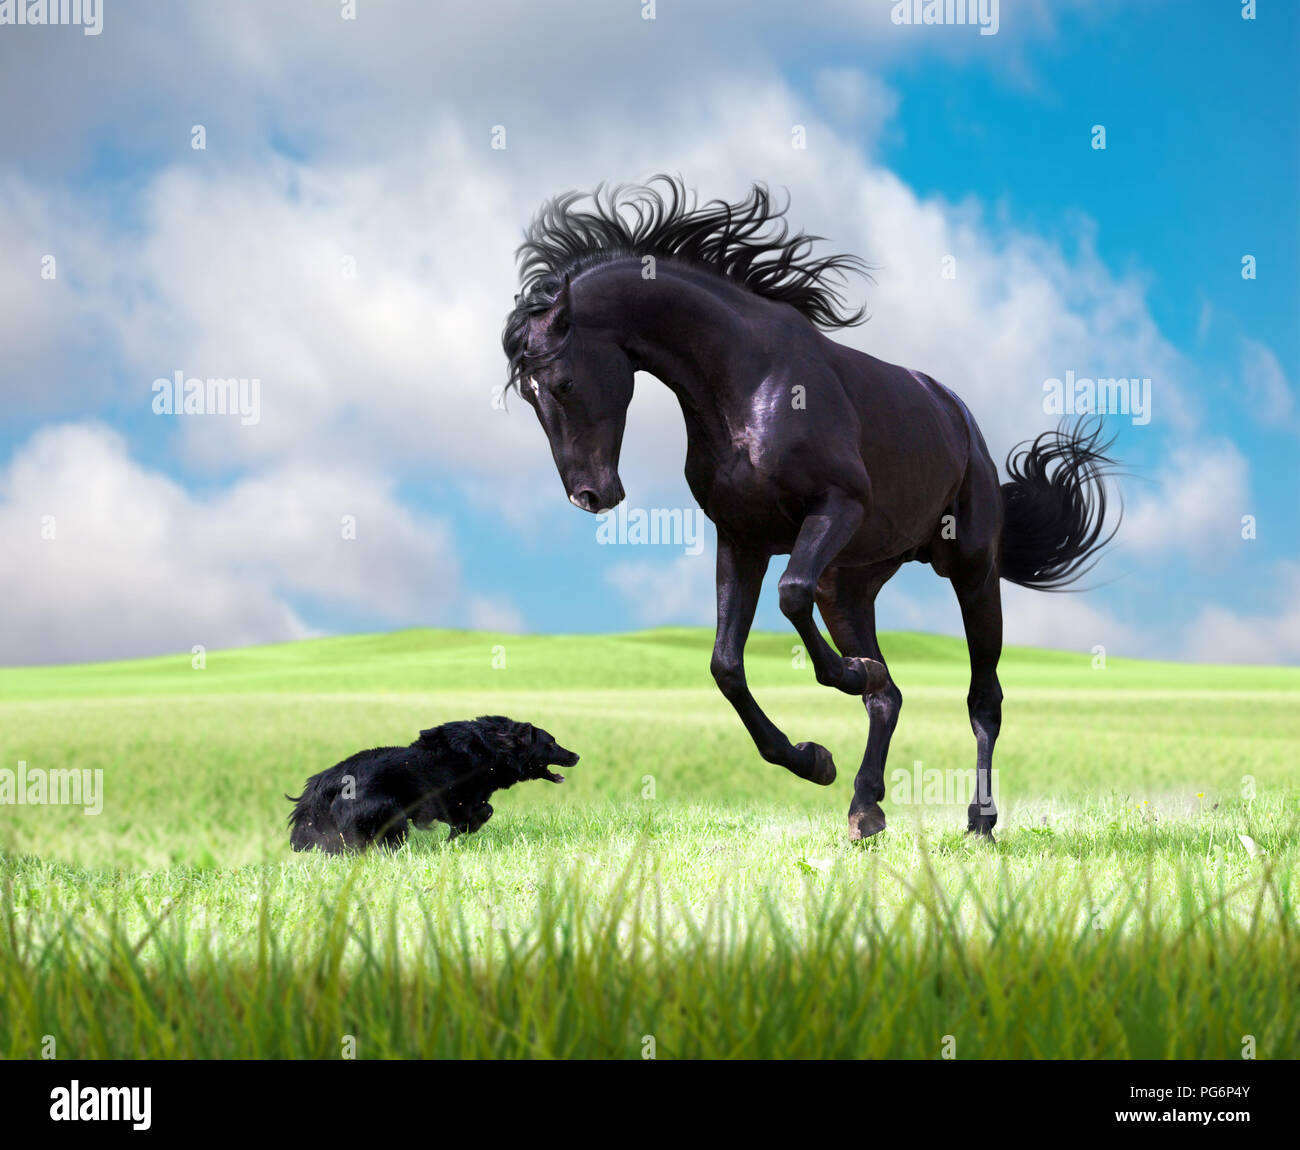 Cavallo nero gioca con il cane nero sull'erba verde sullo sfondo con cielo nuvoloso Foto Stock